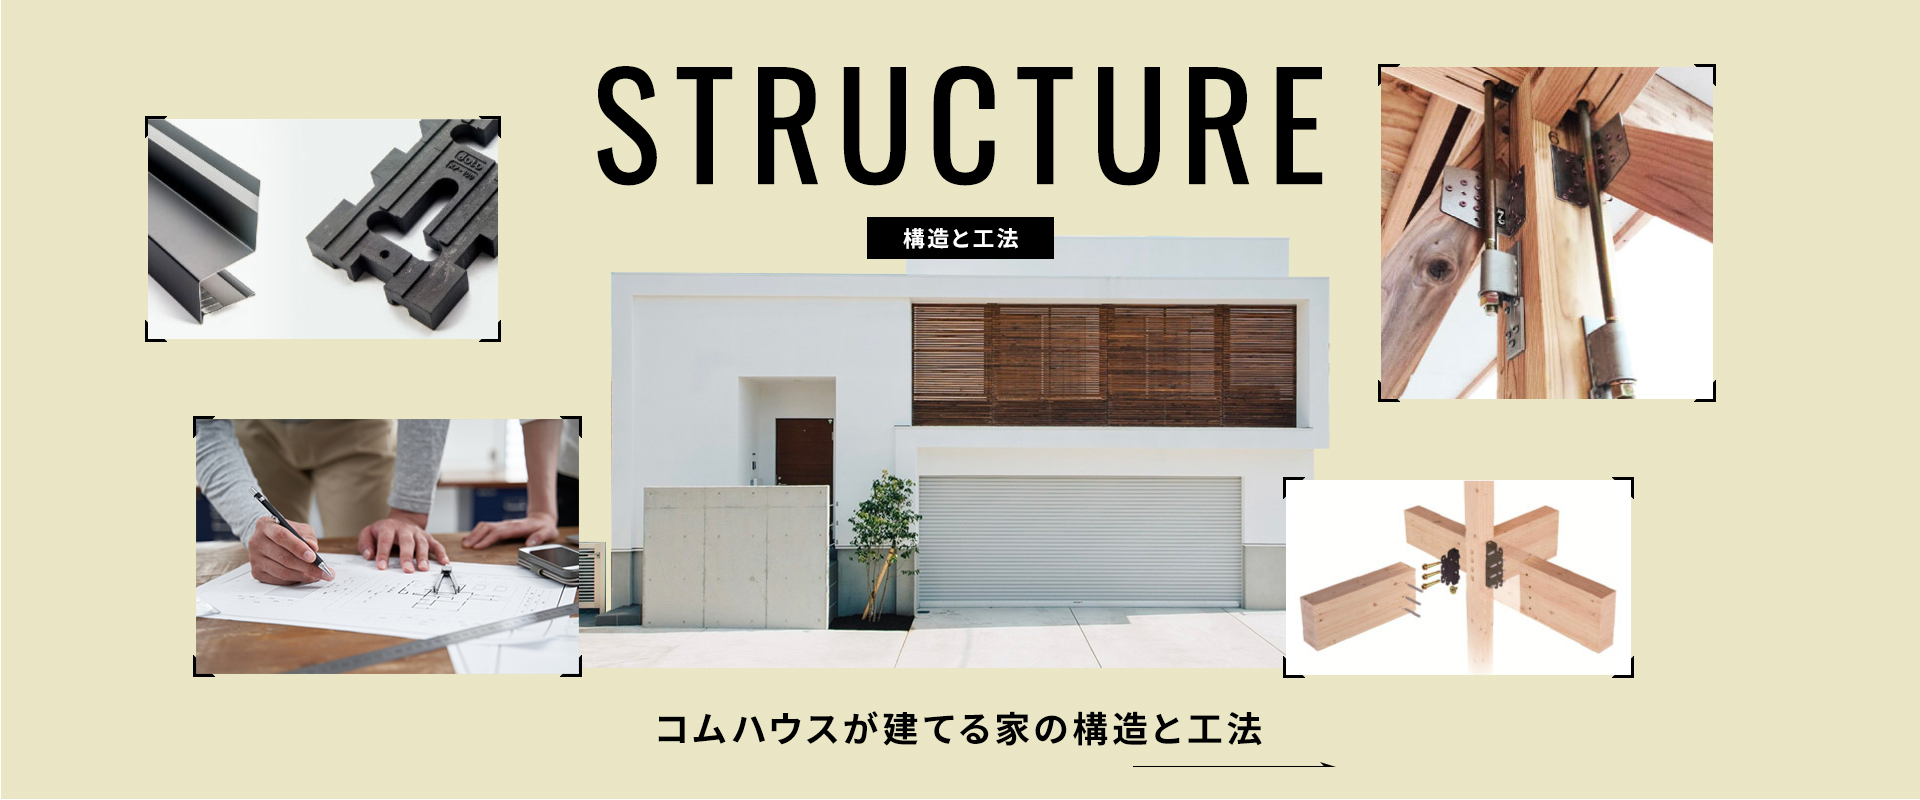 構造と工法・家づくりについて